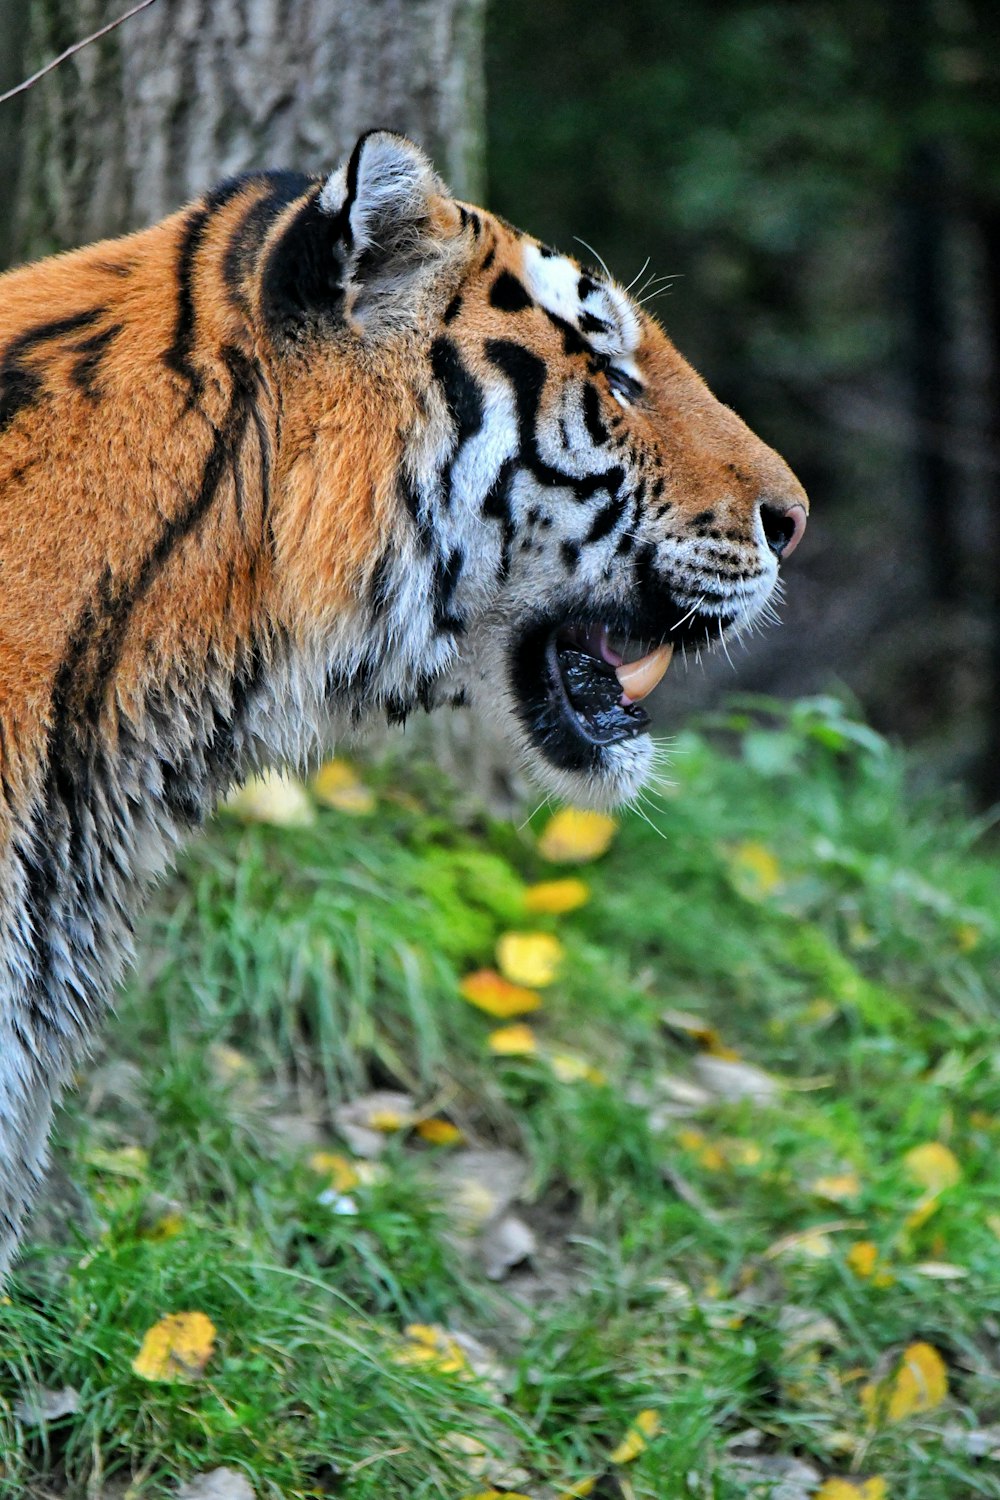 a tiger in a grassy area